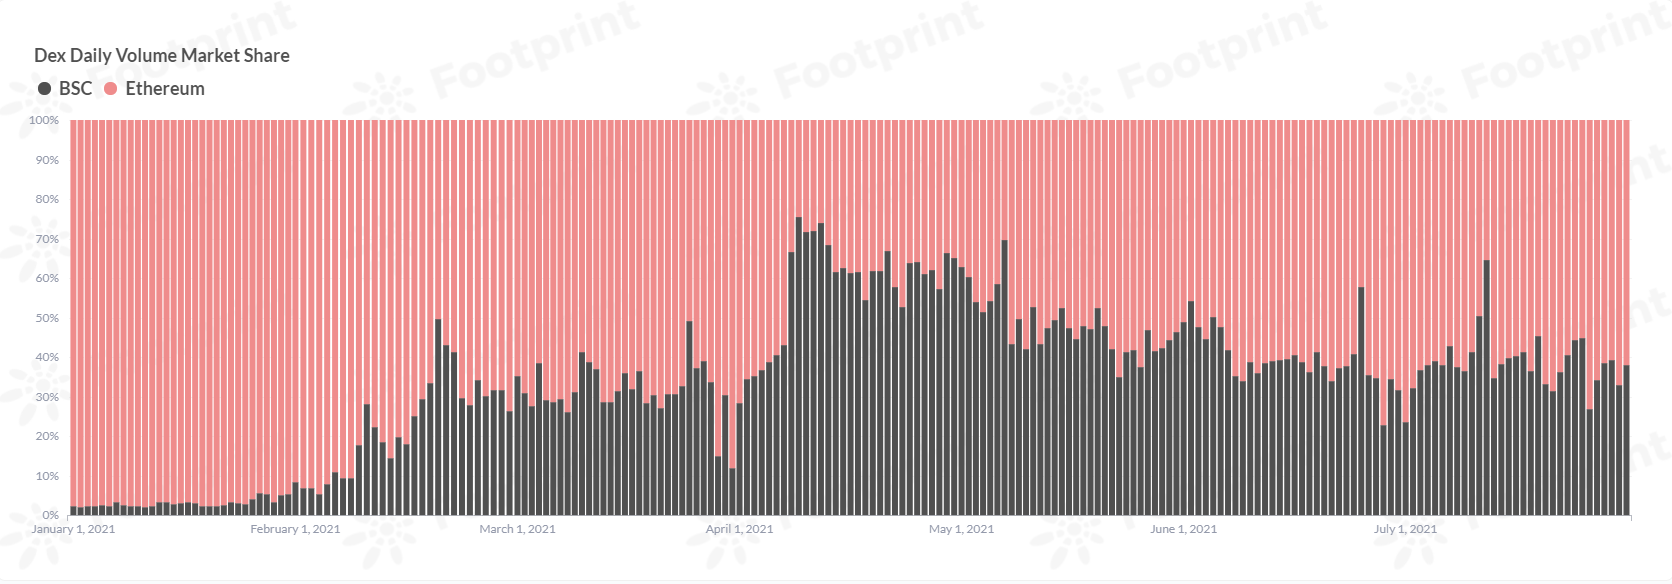 Dex跨鏈每日交易量市場份額（自2021年1月） 數據來源：Footprint